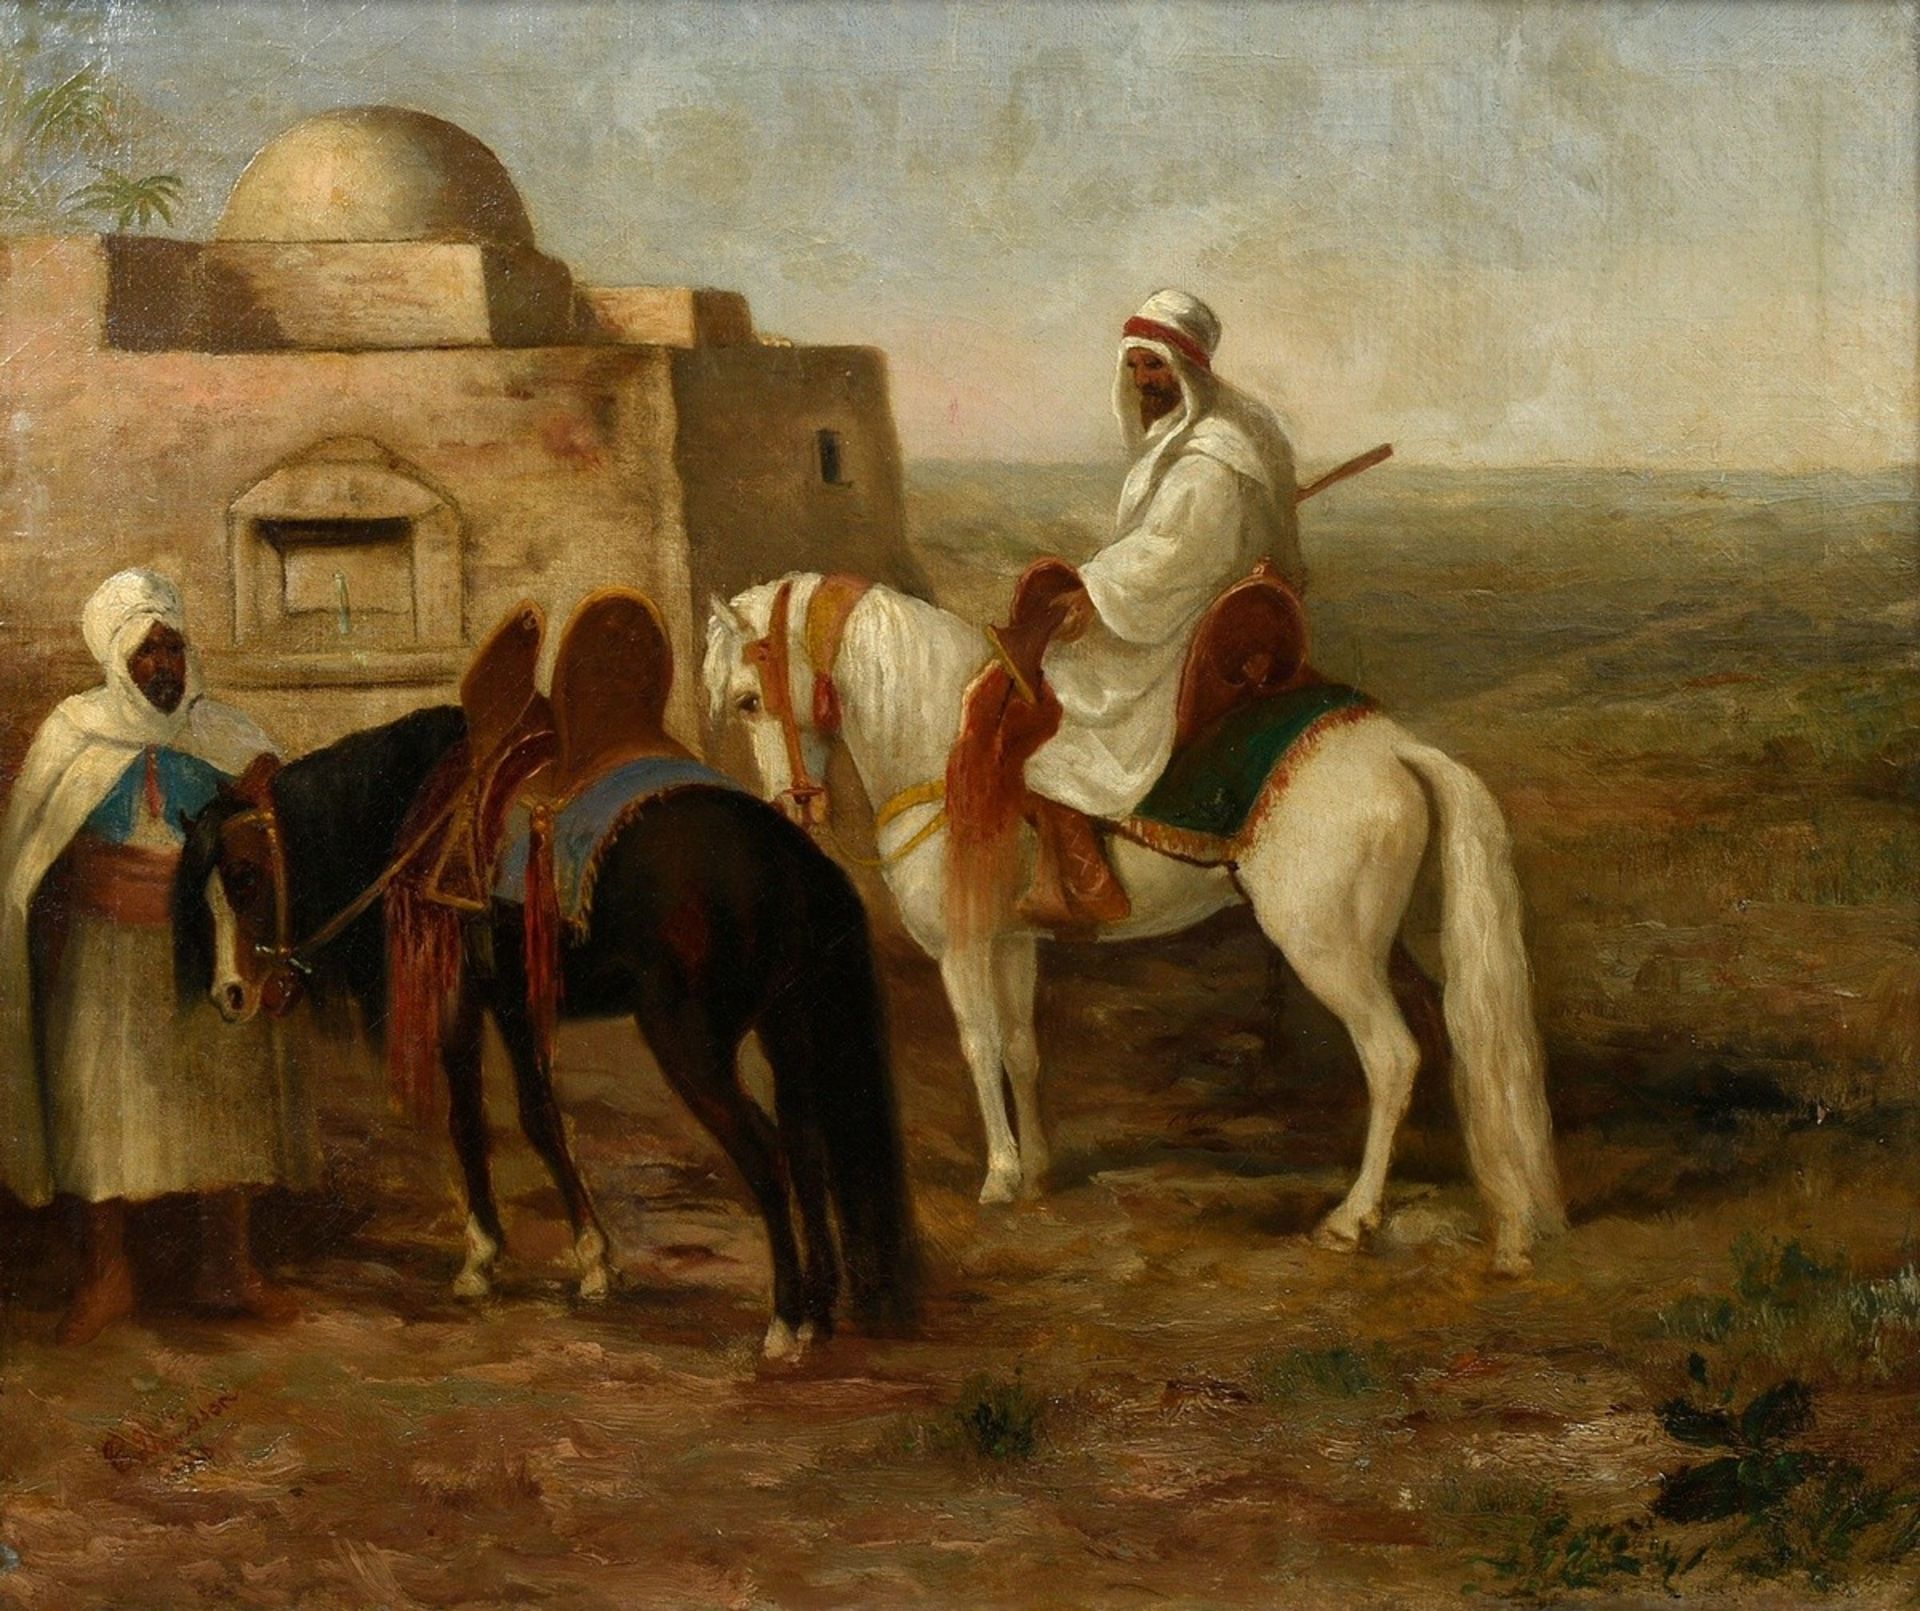 Davidson, Charles Grant (1824-1902) "Zwei Araber mit Pferden außerhalb der Stadt", Öl/Leinwand wohl